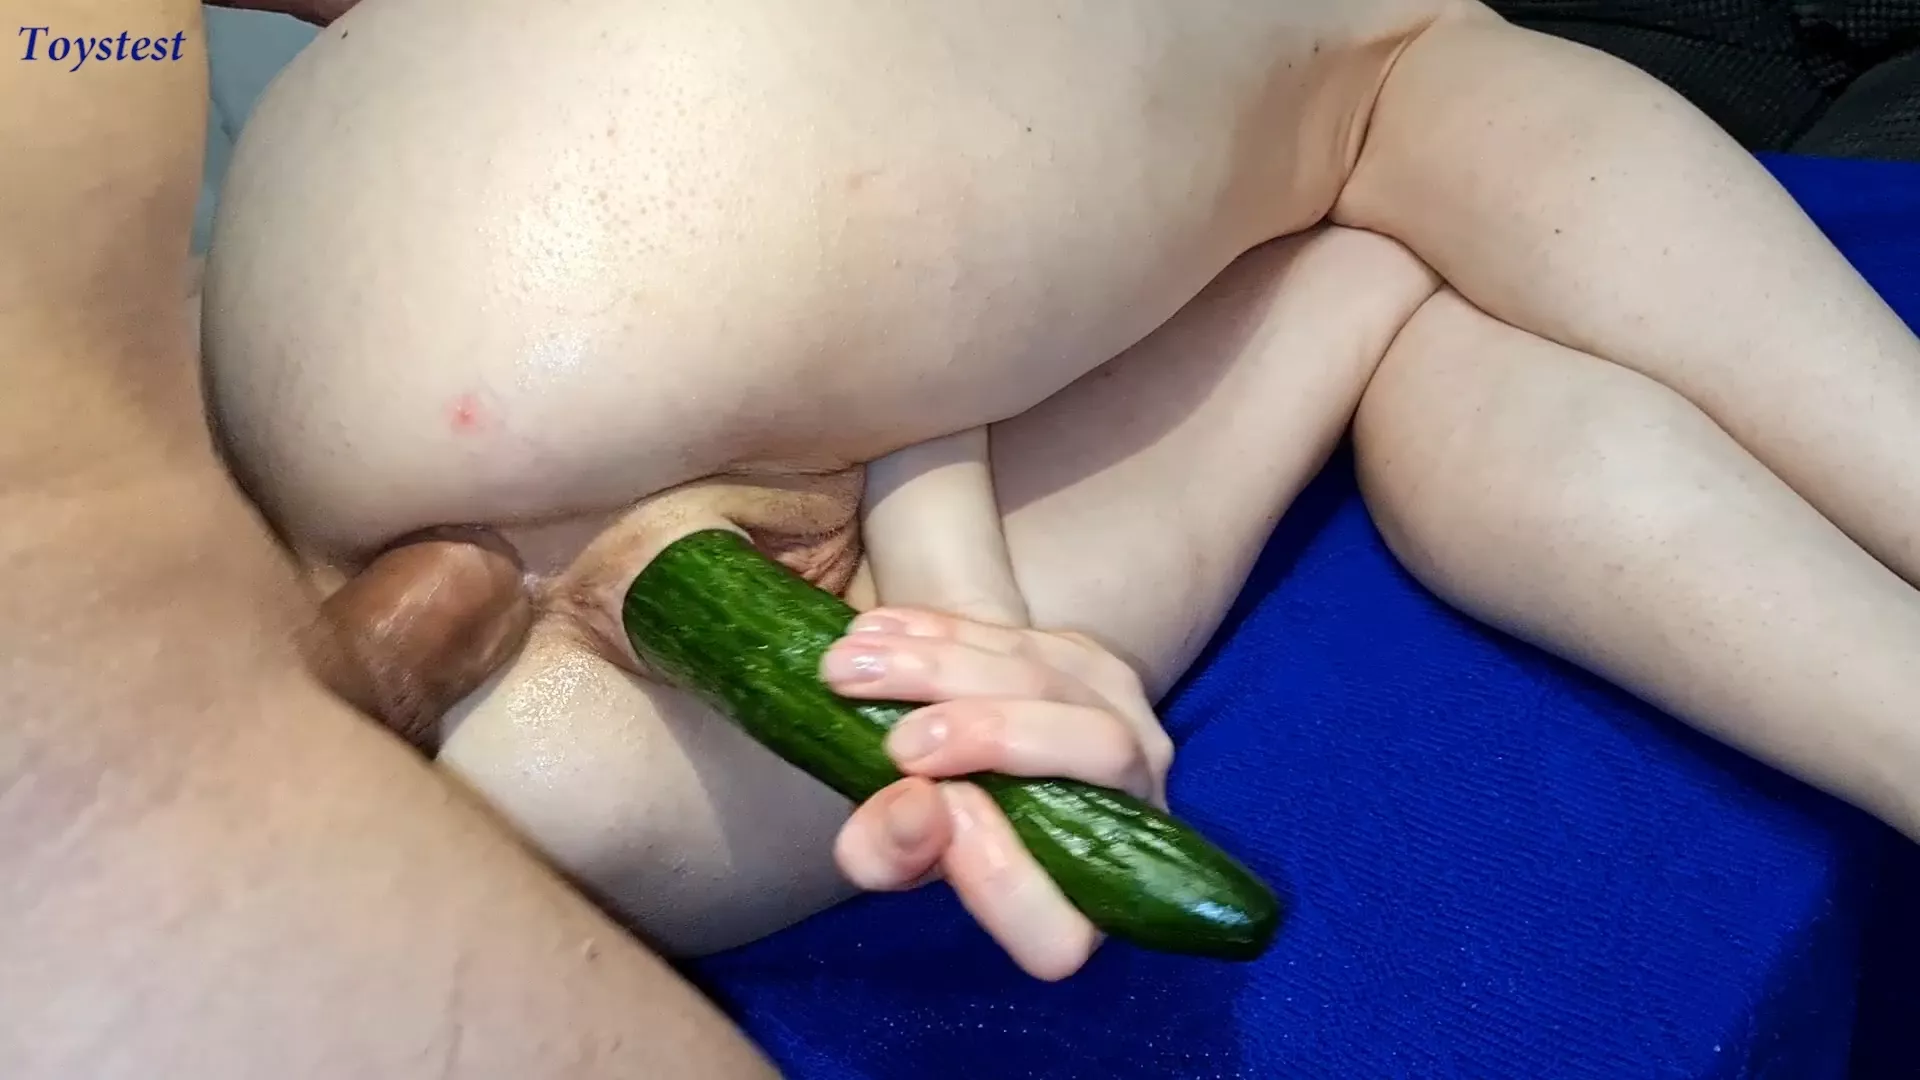 Cucumber blowjob